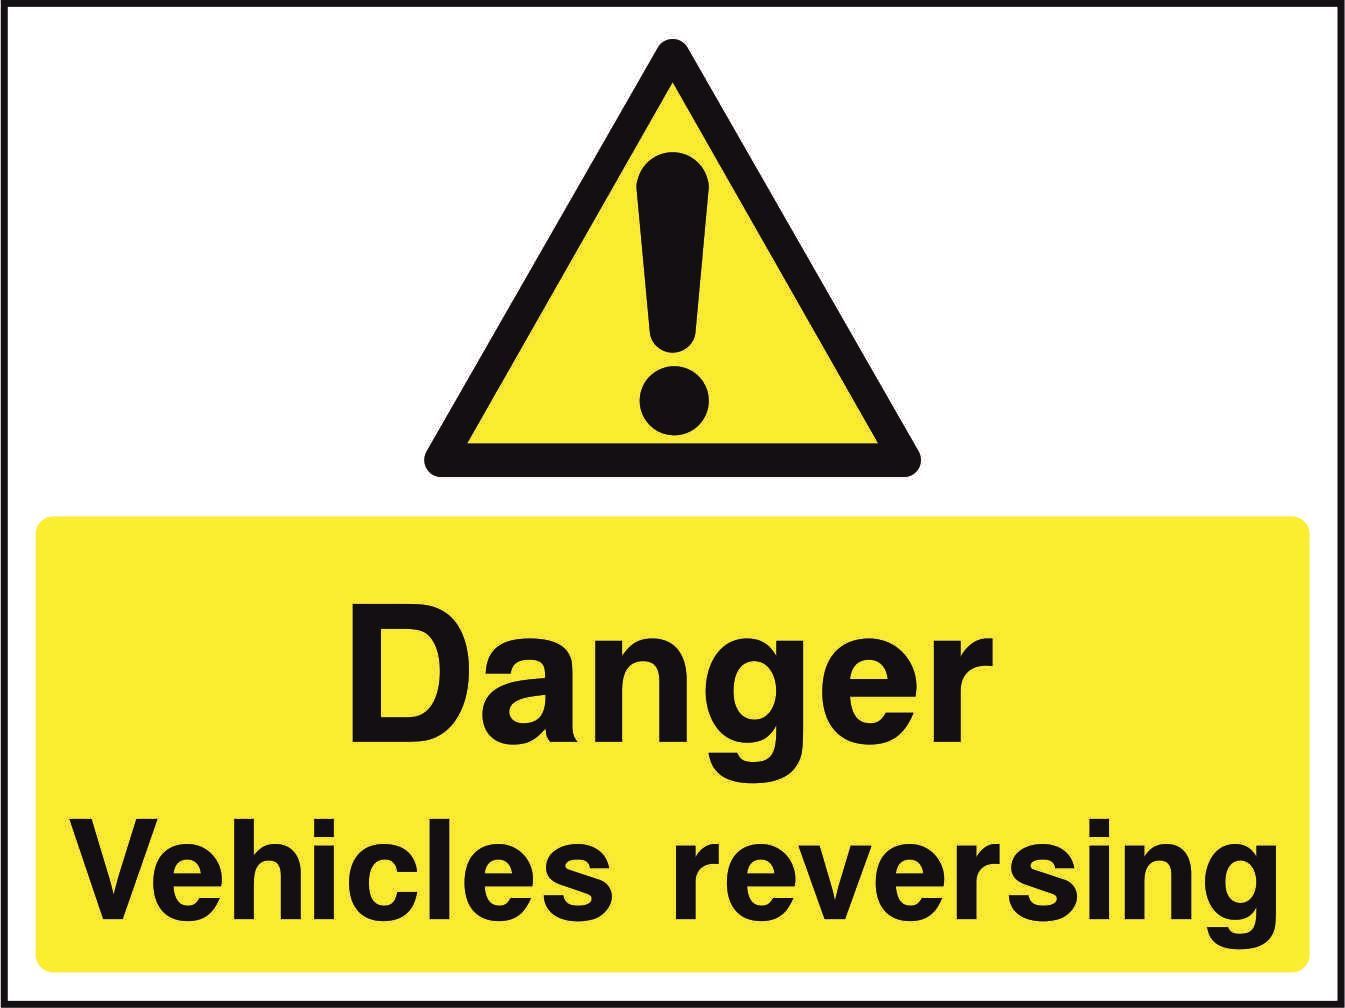 Danger Vehicles reversing